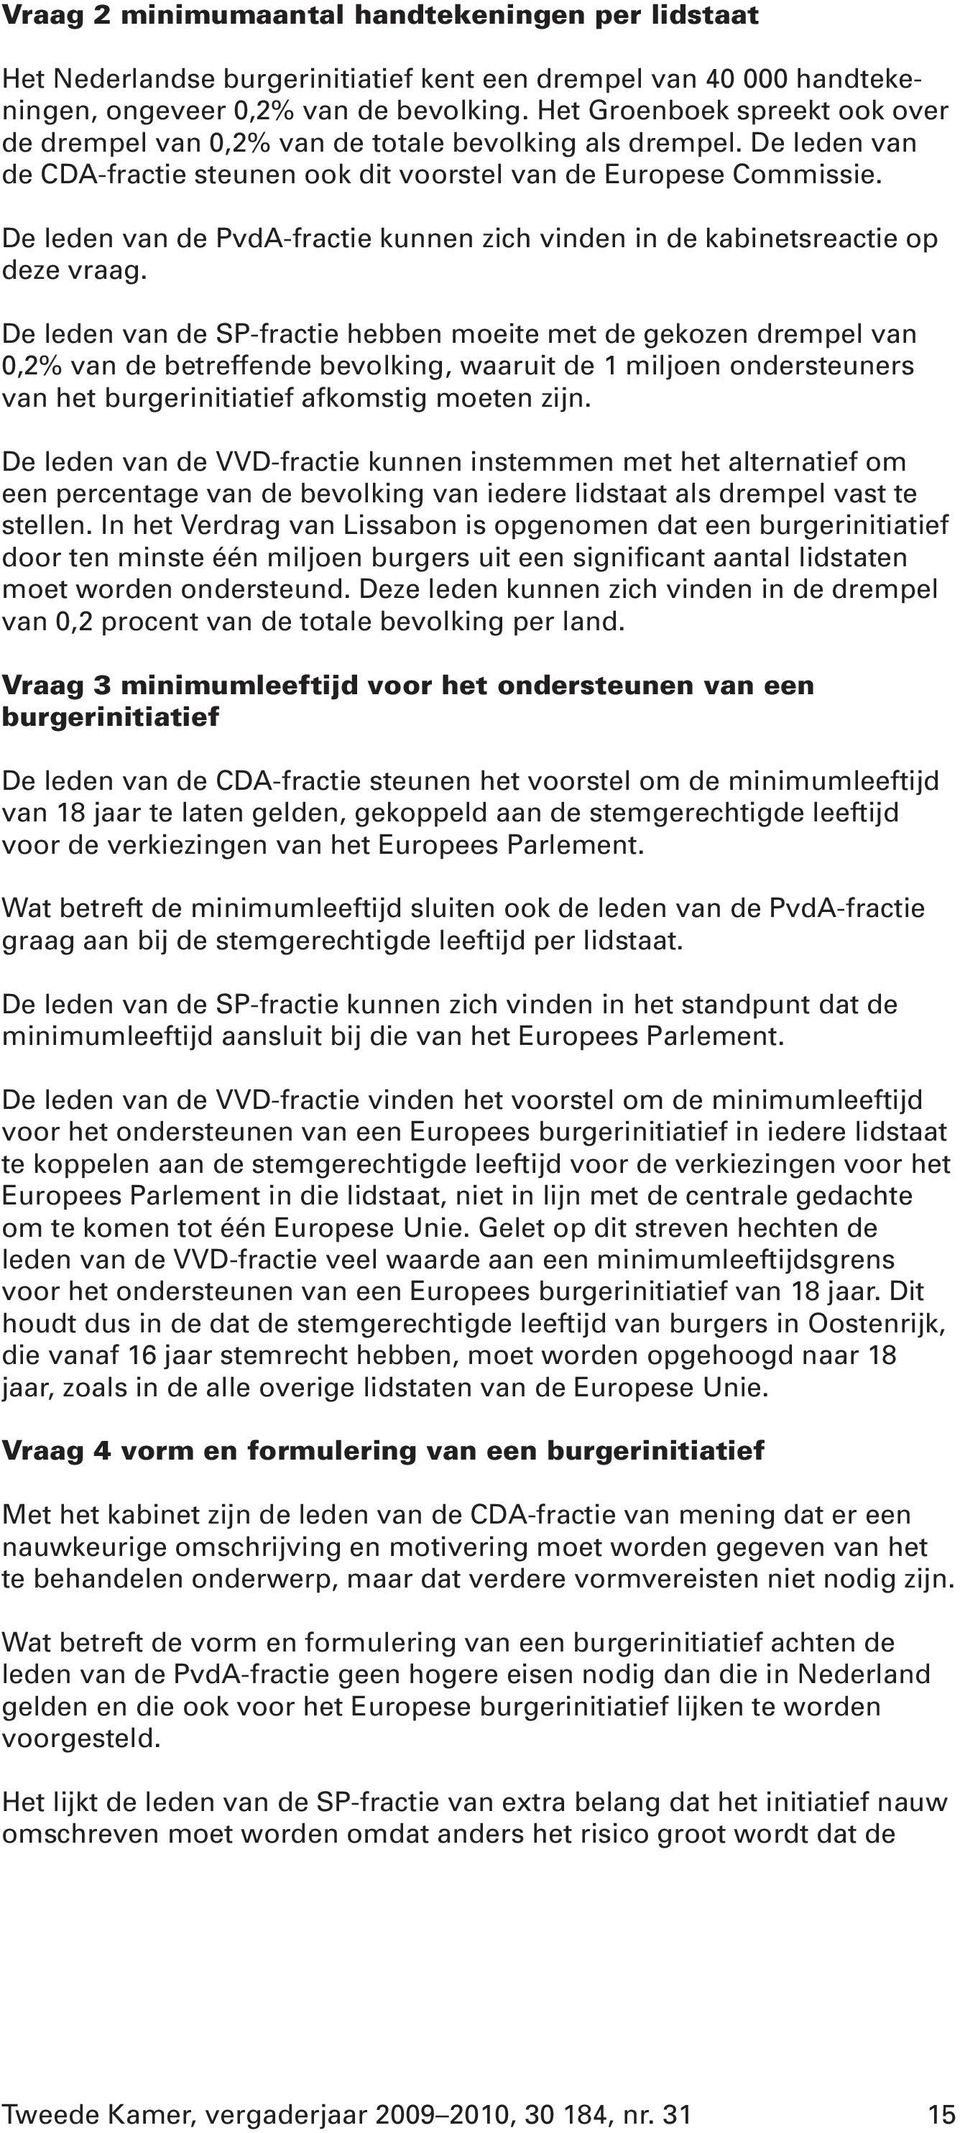 De leden van de PvdA-fractie kunnen zich vinden in de kabinetsreactie op deze vraag.